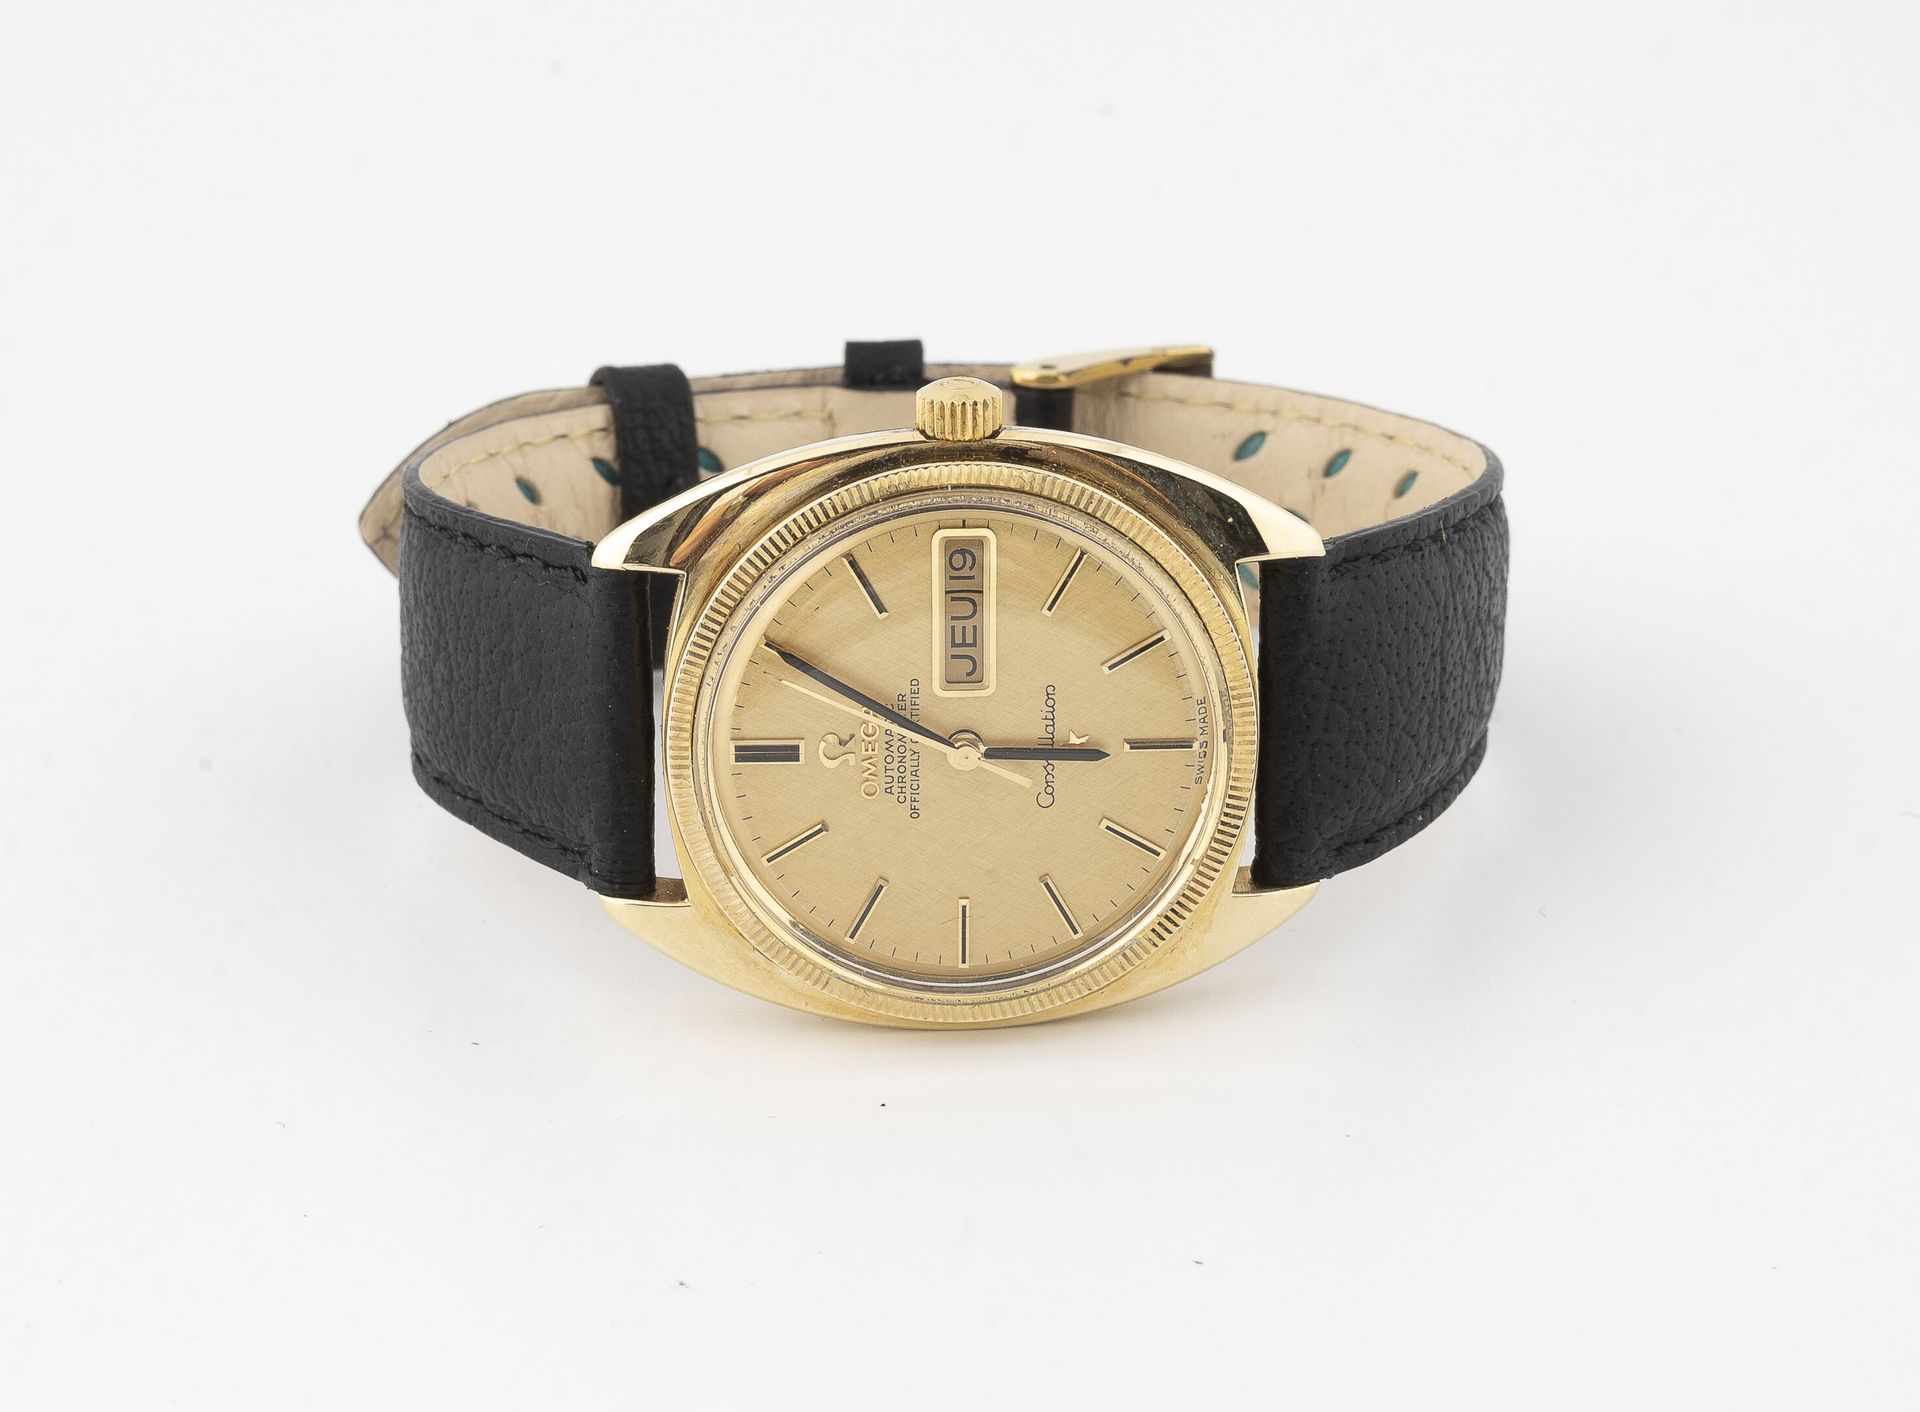 OMEGA CONSTELLATION Armbanduhr für Männer.

Tonneau-Gehäuse aus vergoldetem Meta&hellip;